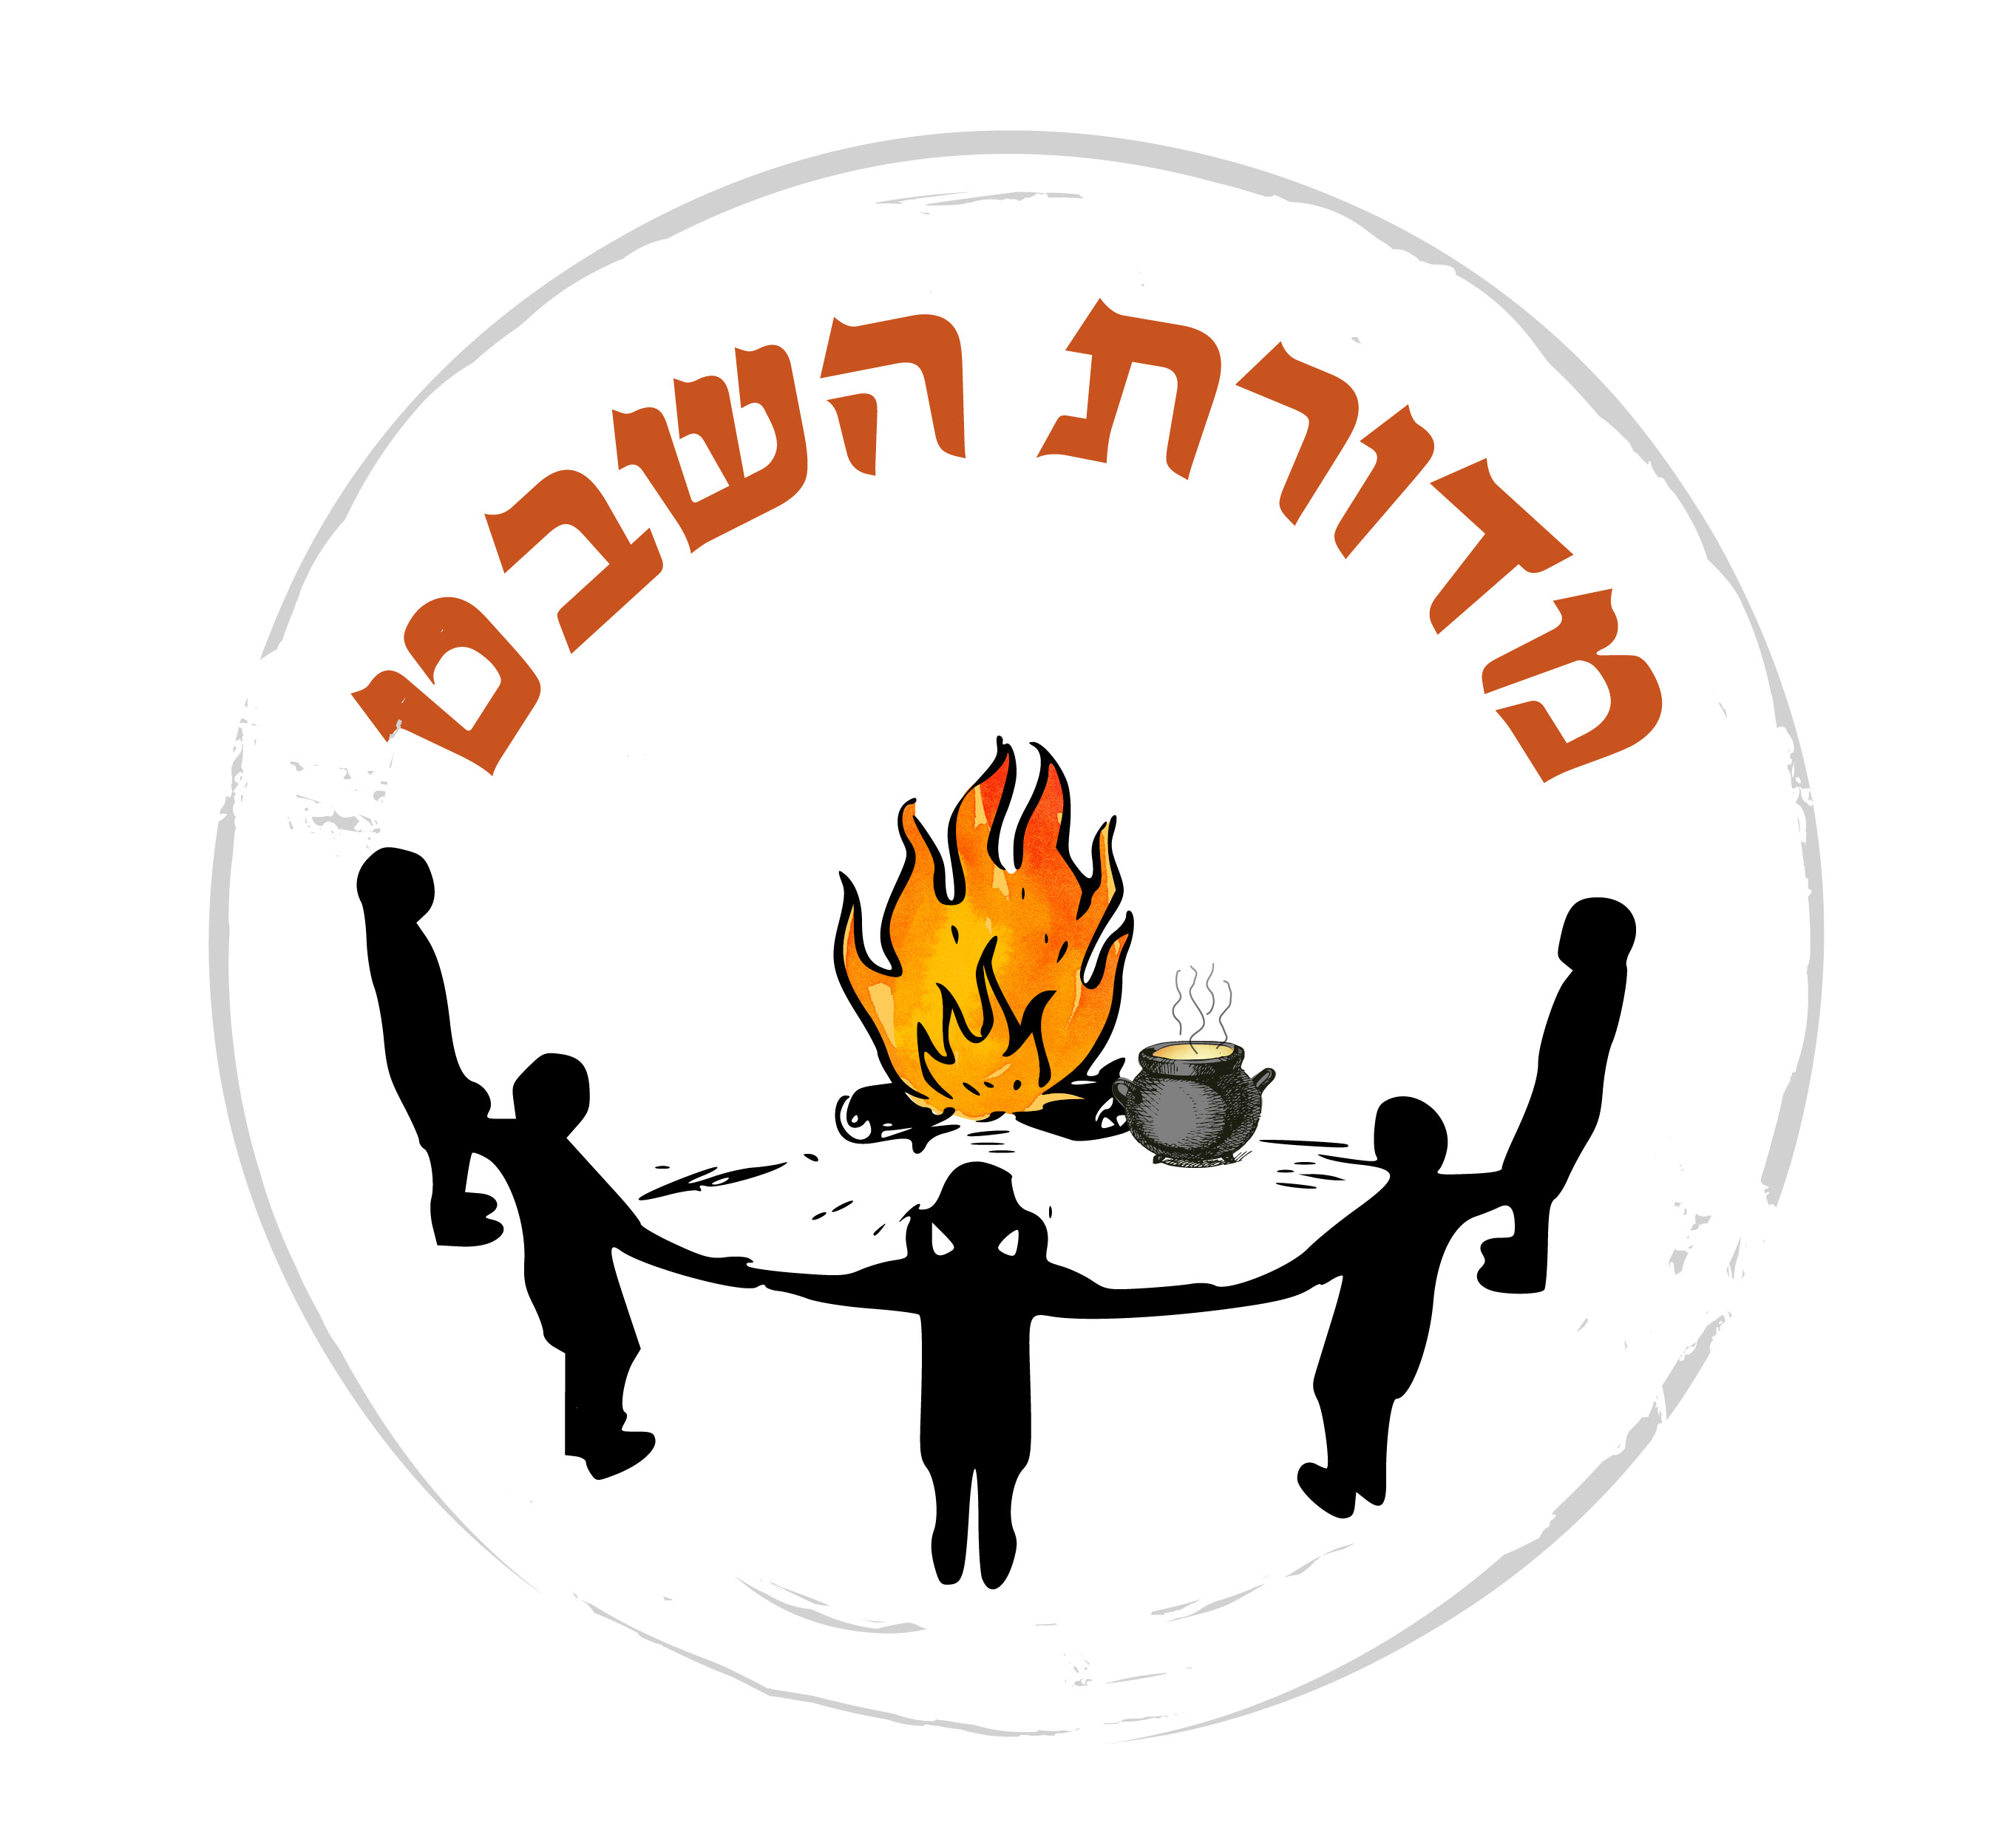 לוגו מדורת השבט3.jpg